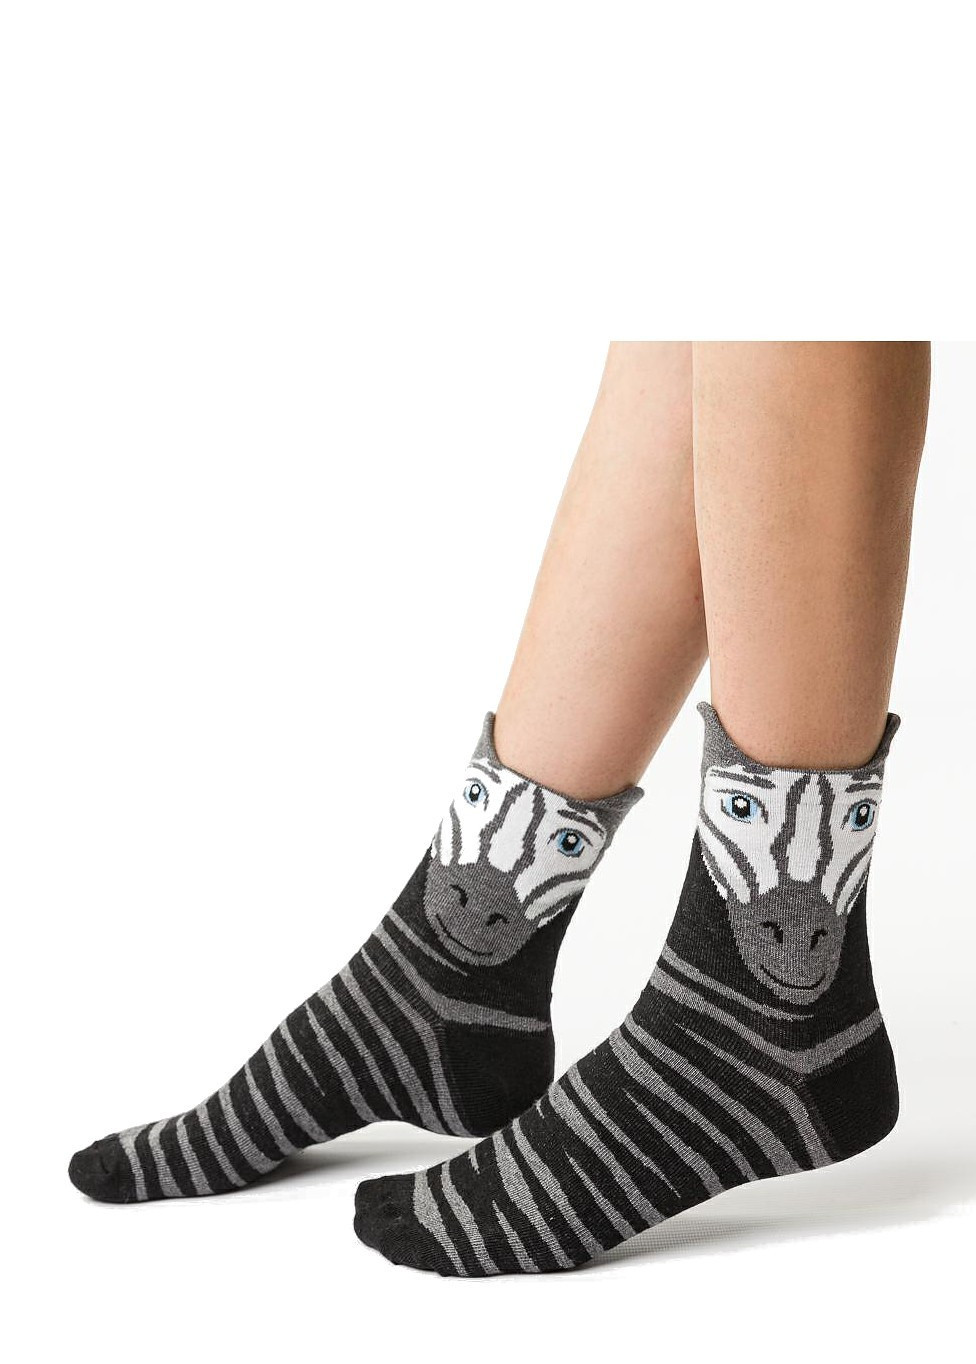 Dámské ponožky Steven art.099 Vybrané vzory losos 35-37